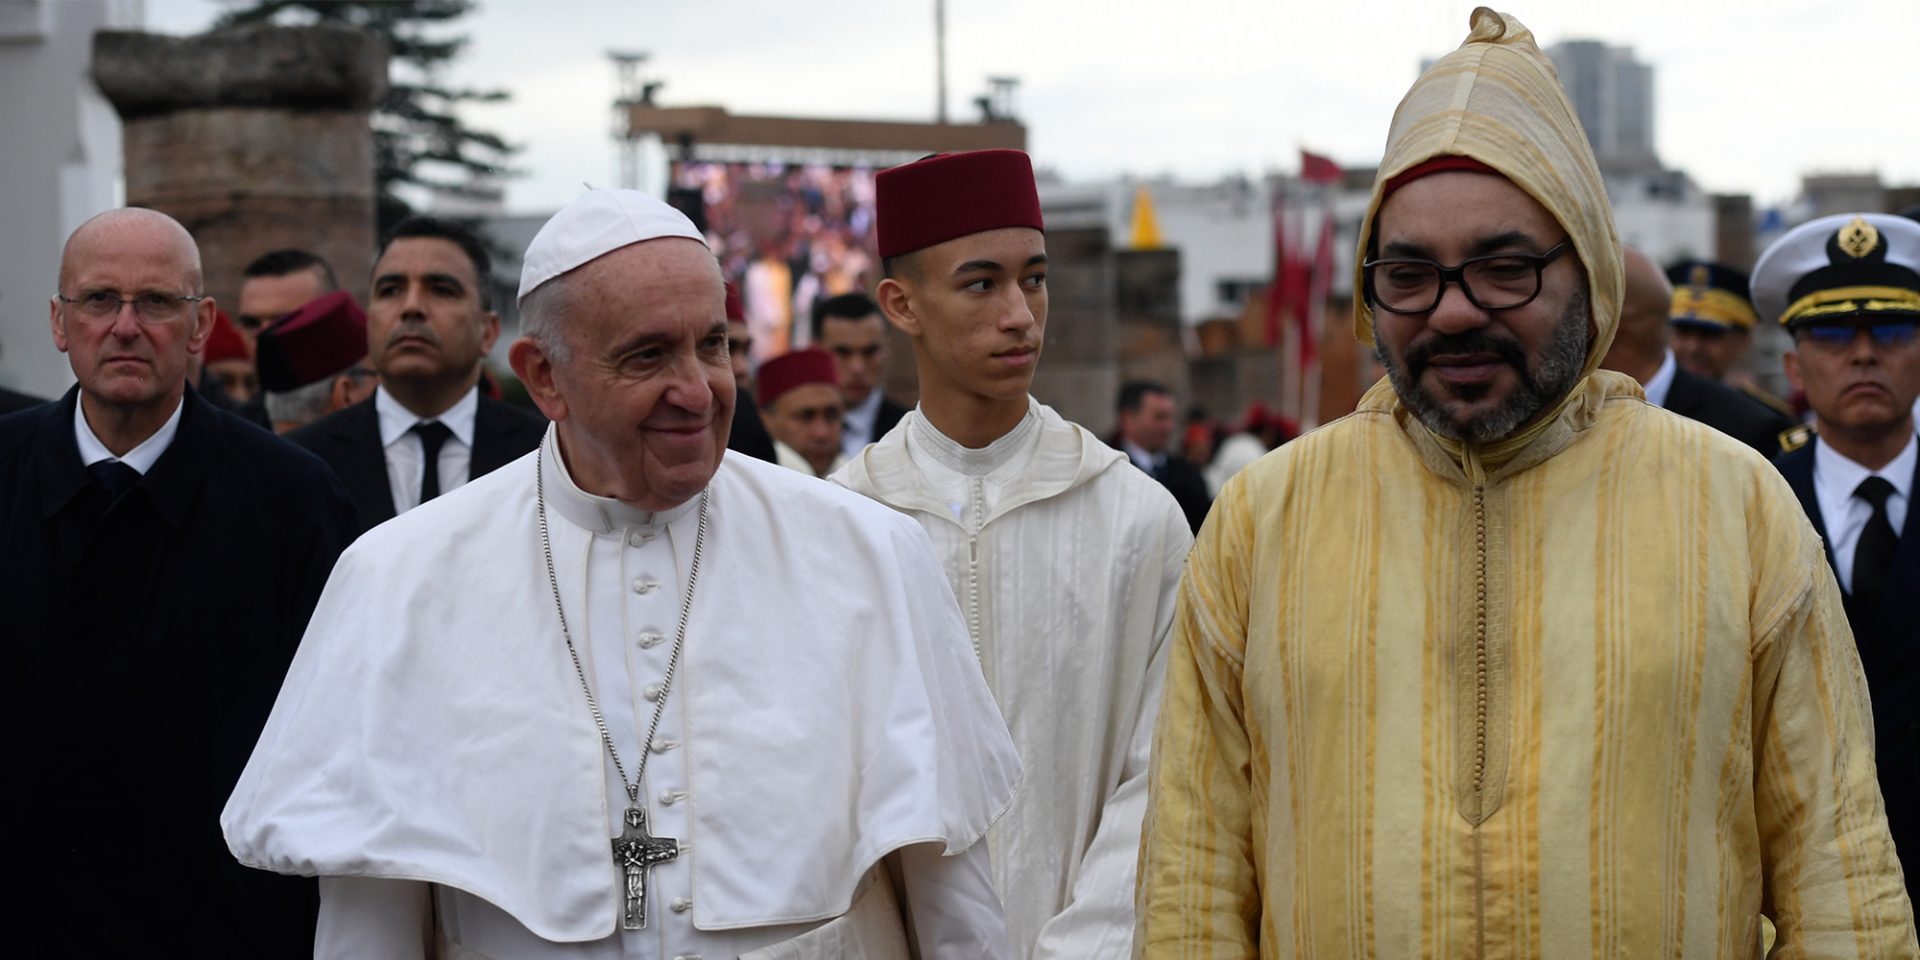 واشنطن: المغرب أحرز تقدما بالحريات الدينية وأدرج الثقافة اليهودية بالمناهج الدراسية